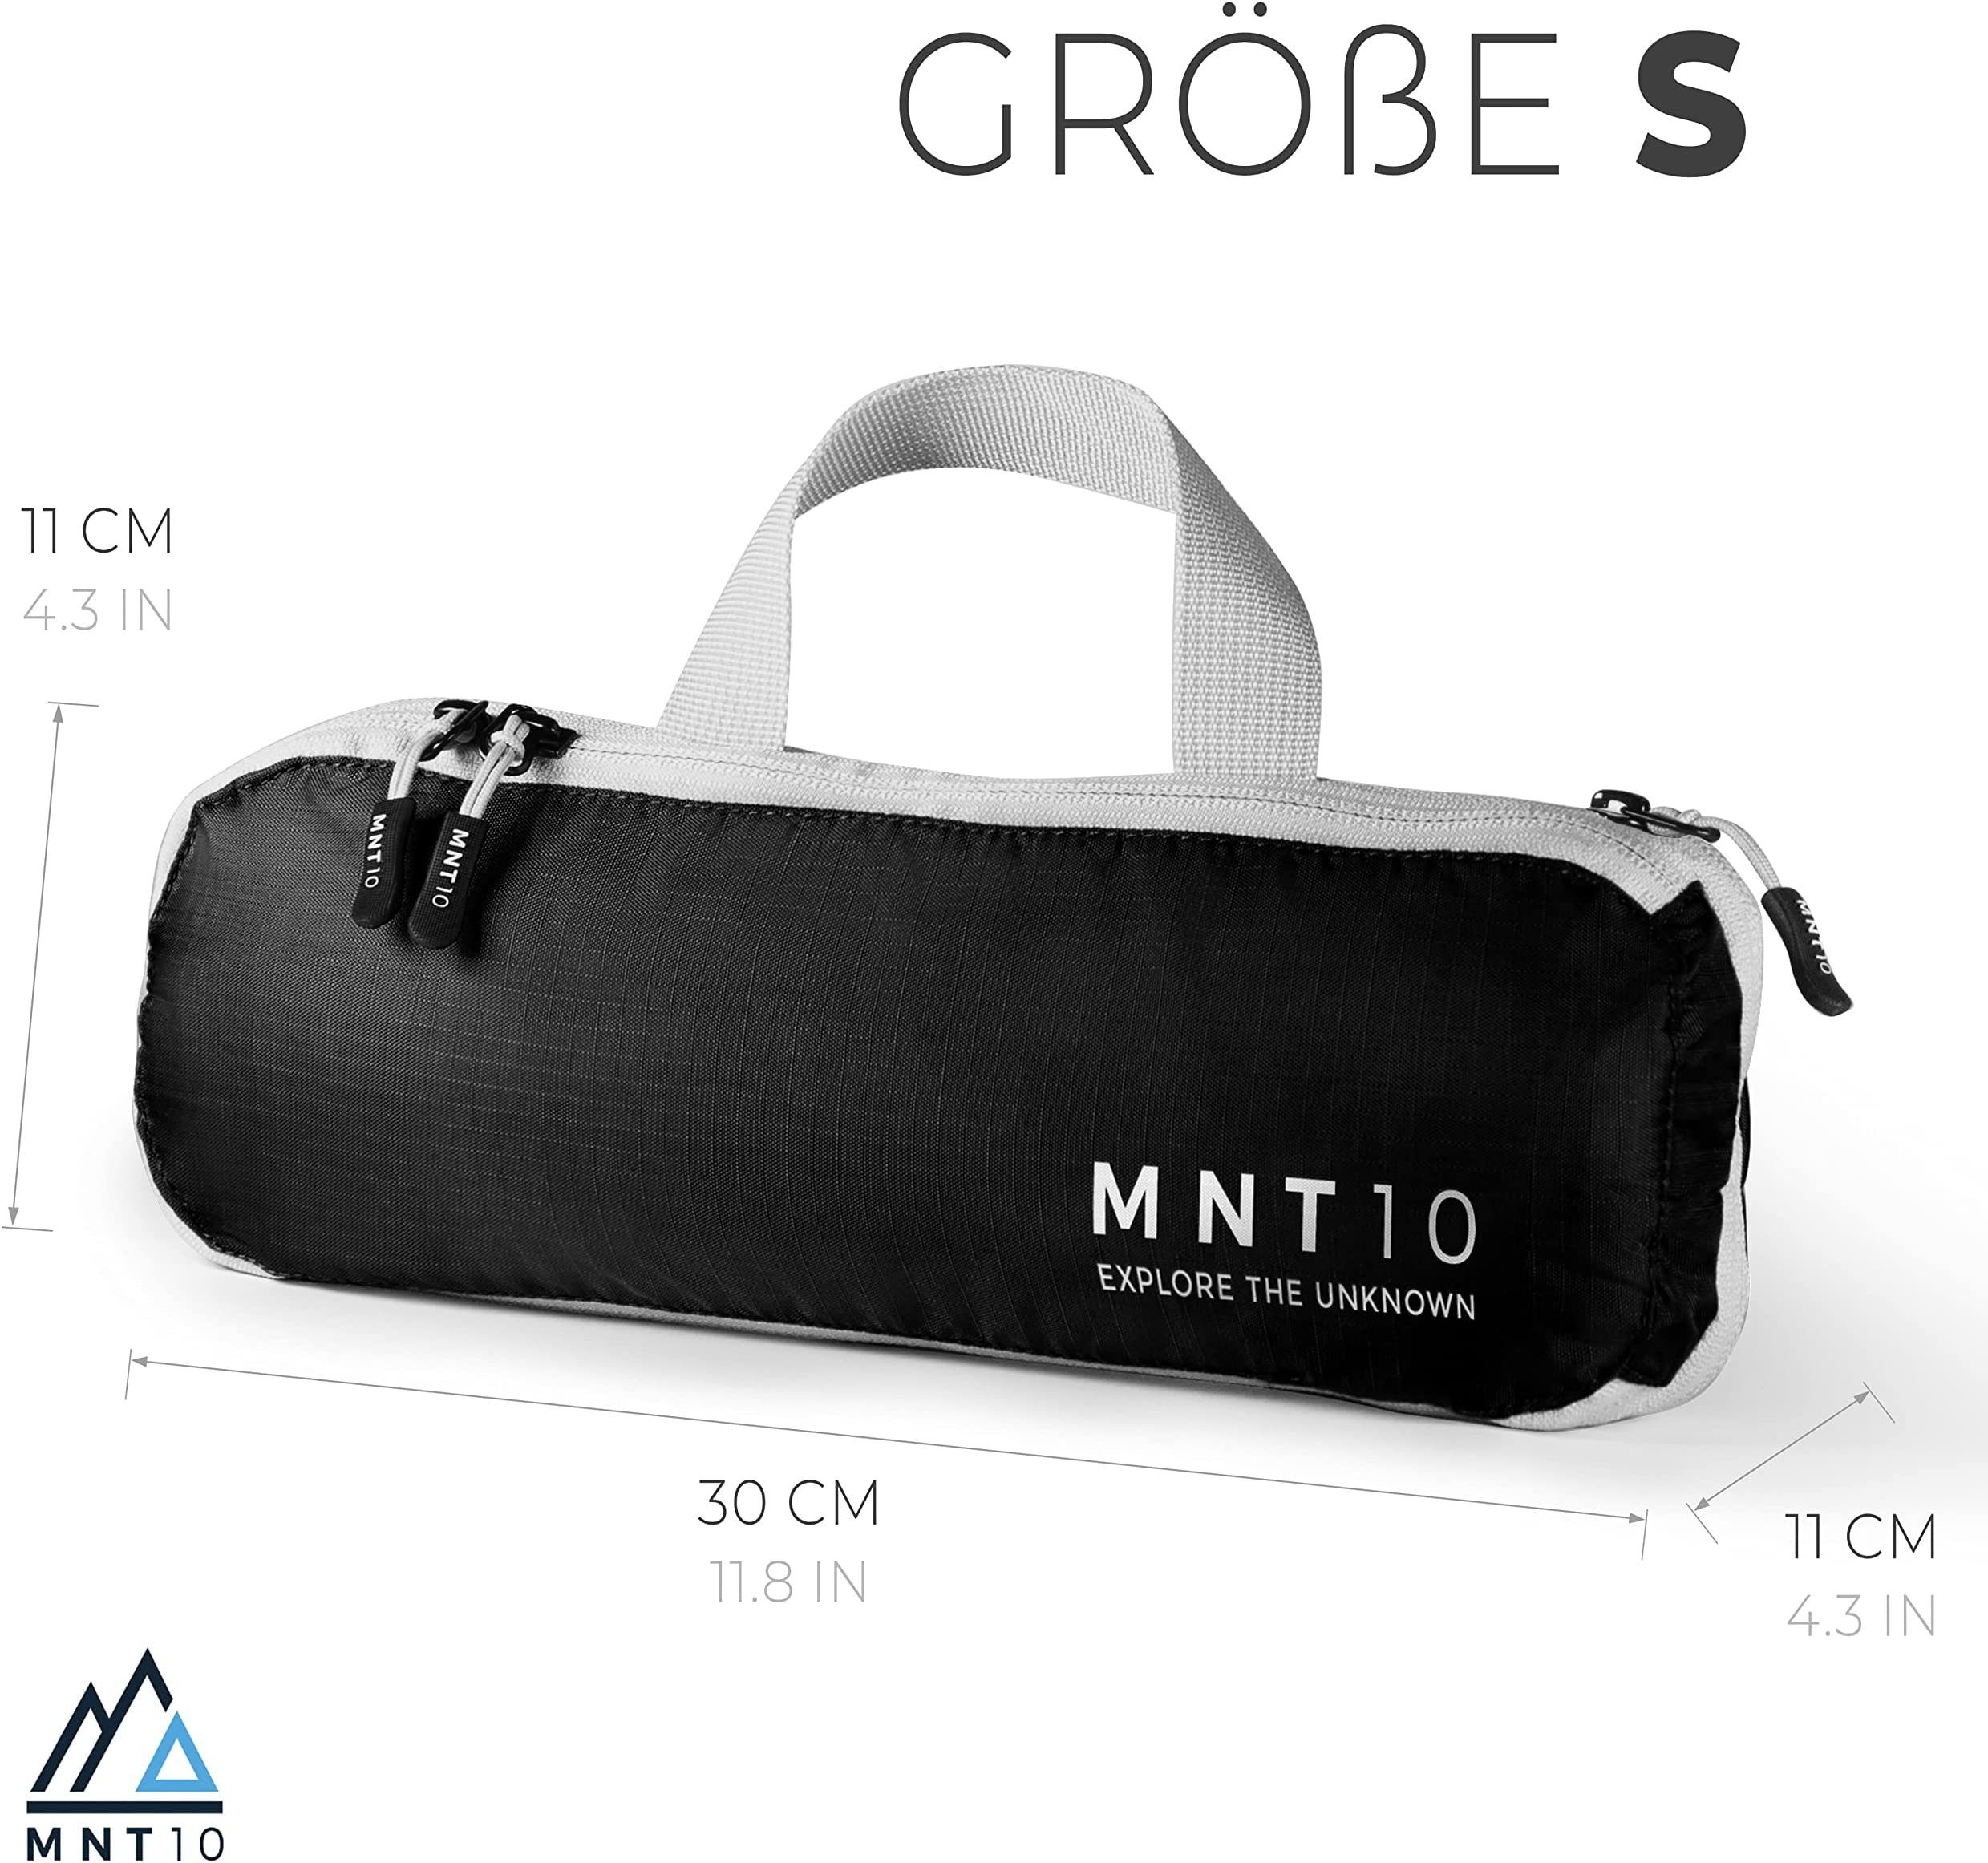 XL Koffer-Organizer L, M, S, MNT10 Recycelte Kofferorganizer Kompression Packtaschen mit